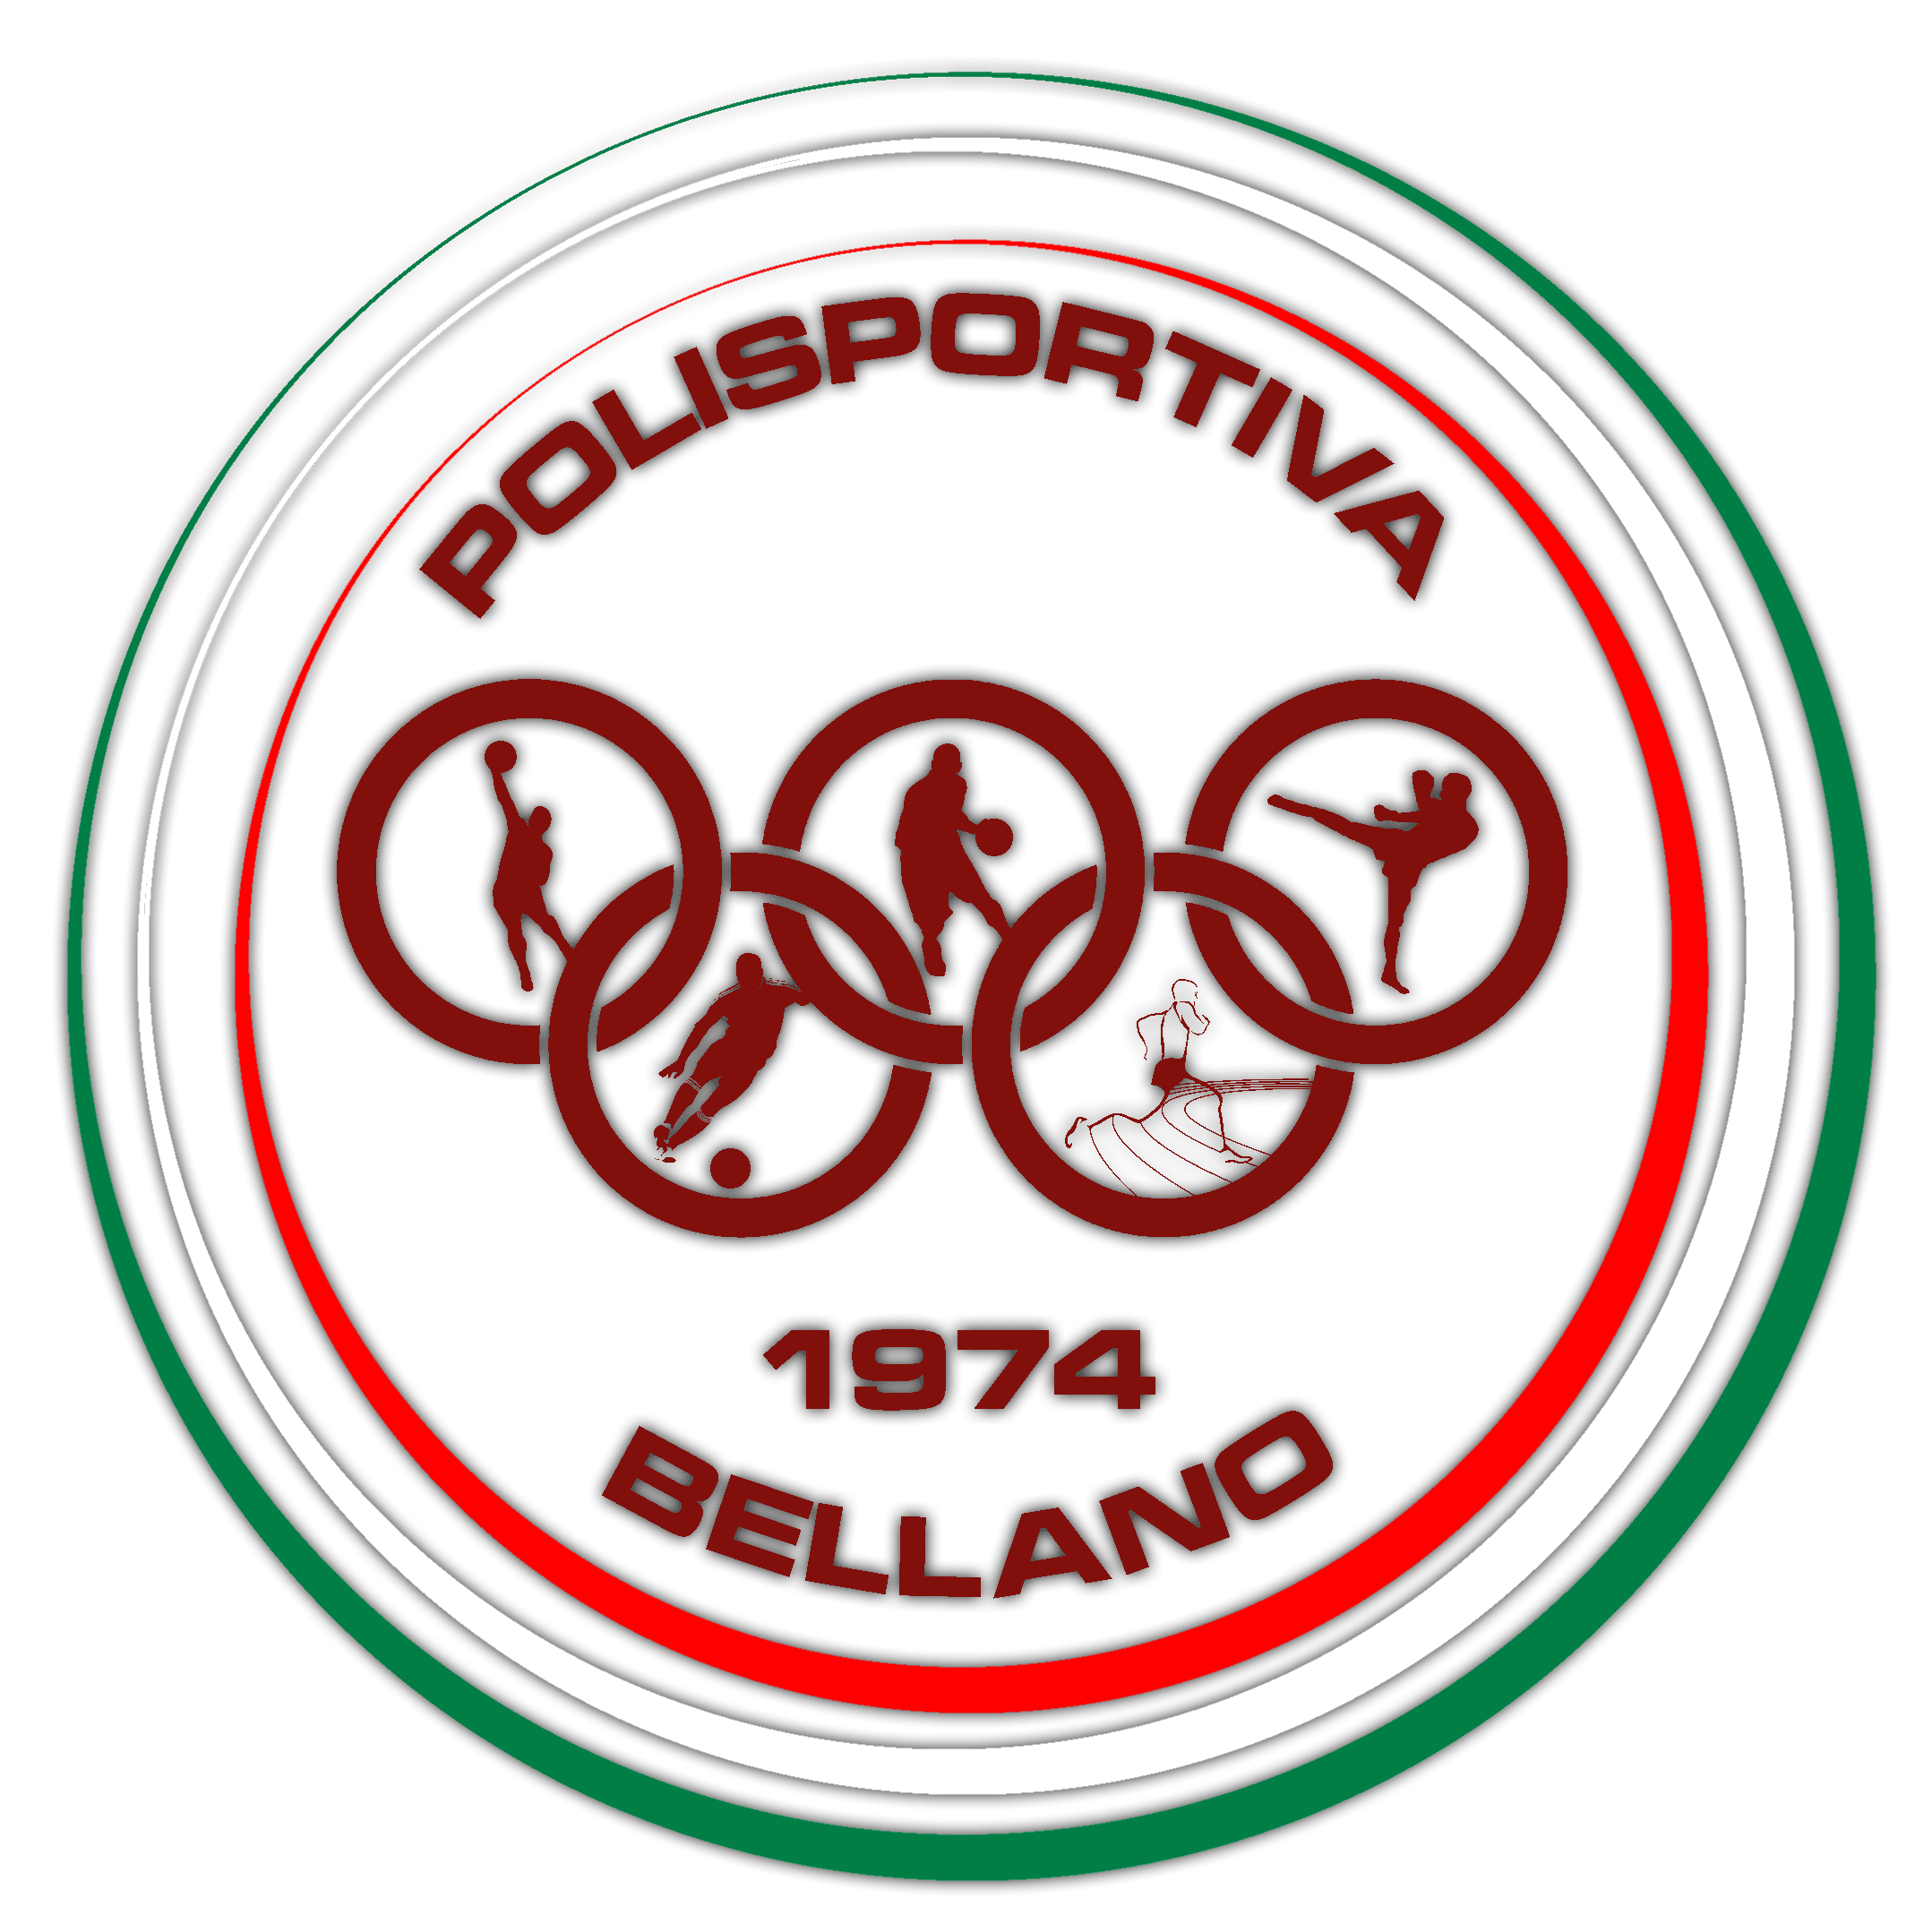 Polisportiva Bellano – Stagione 2018-2019